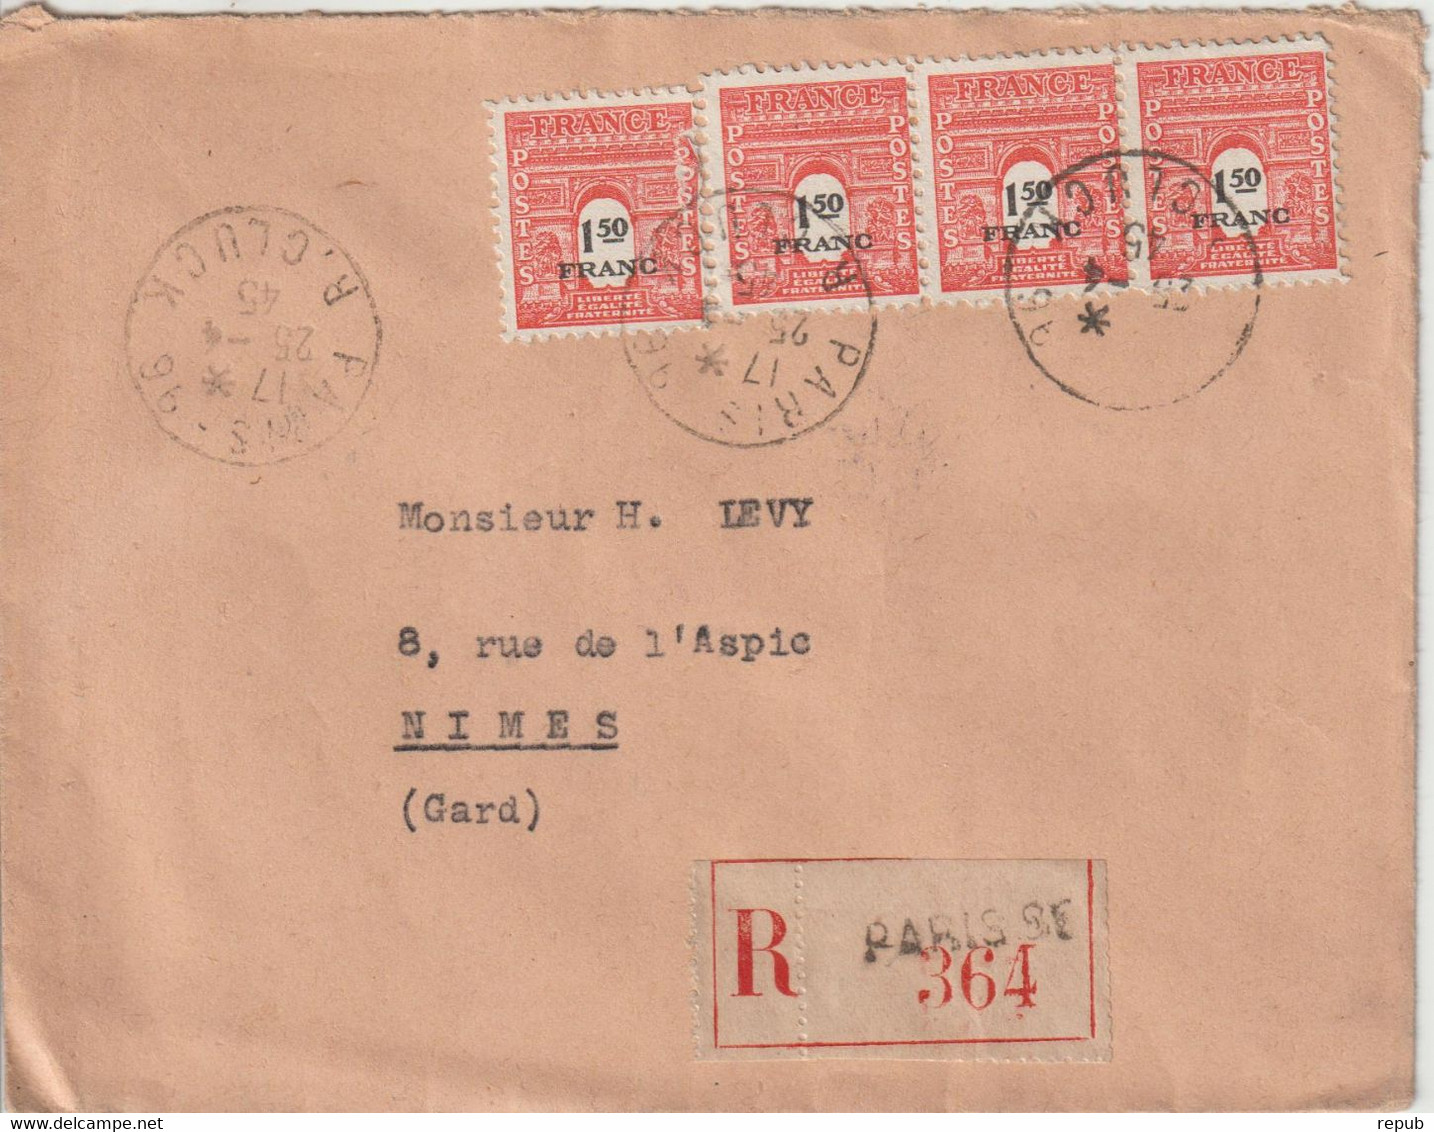 France 1945 Lettre Recommandée De Paris Pour Nimes Avec 4 Ex Du 708 - 1921-1960: Période Moderne